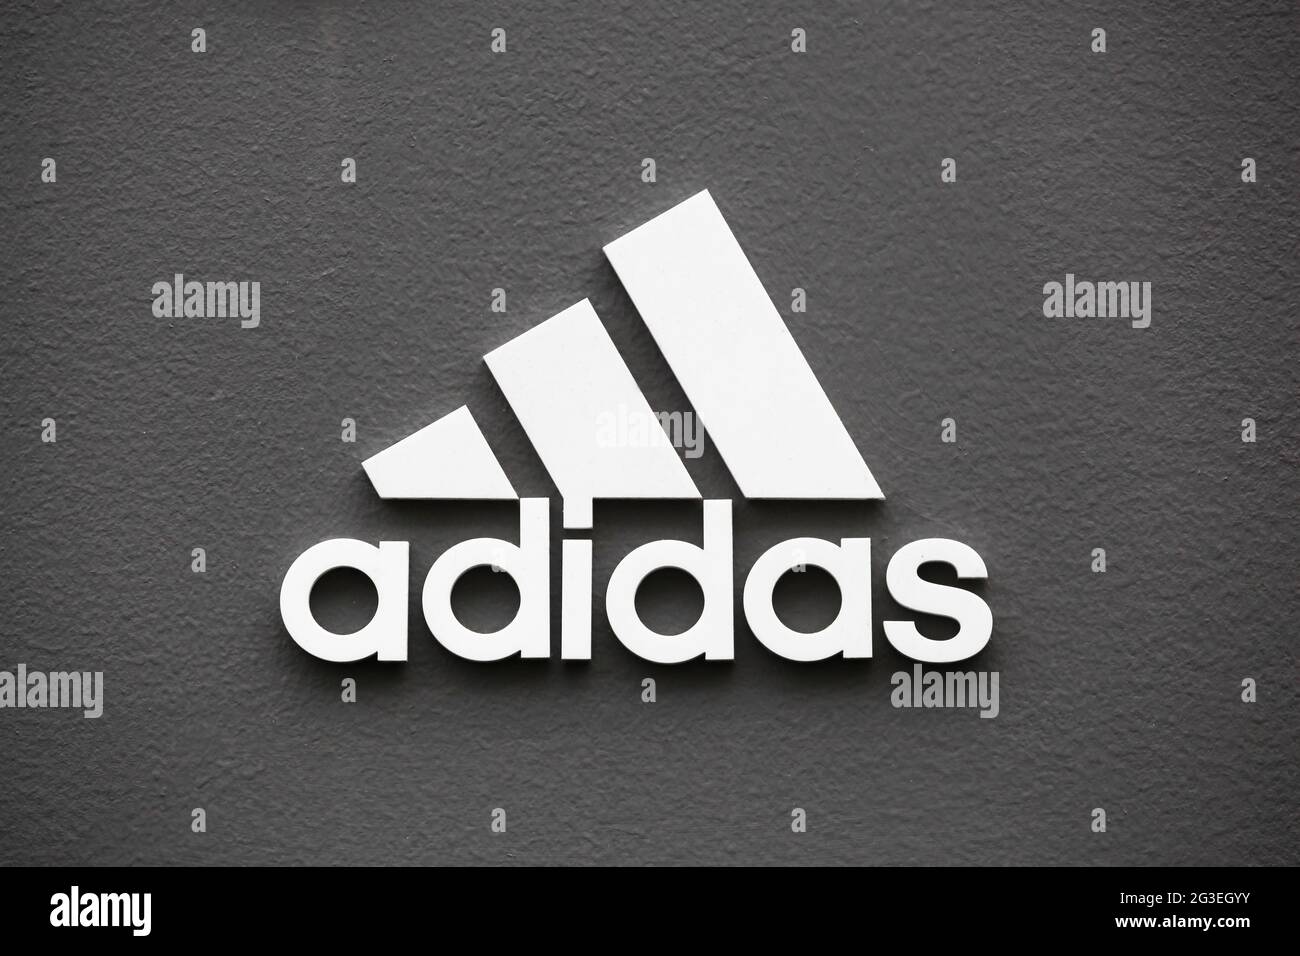 Kopenhagen, Dänemark - 20. August 2020: Adidas Logo an der Wand. Adidas ist ein deutscher multinationaler Konzern, der Sportschuhe und Bekleidung herstellt Stockfoto